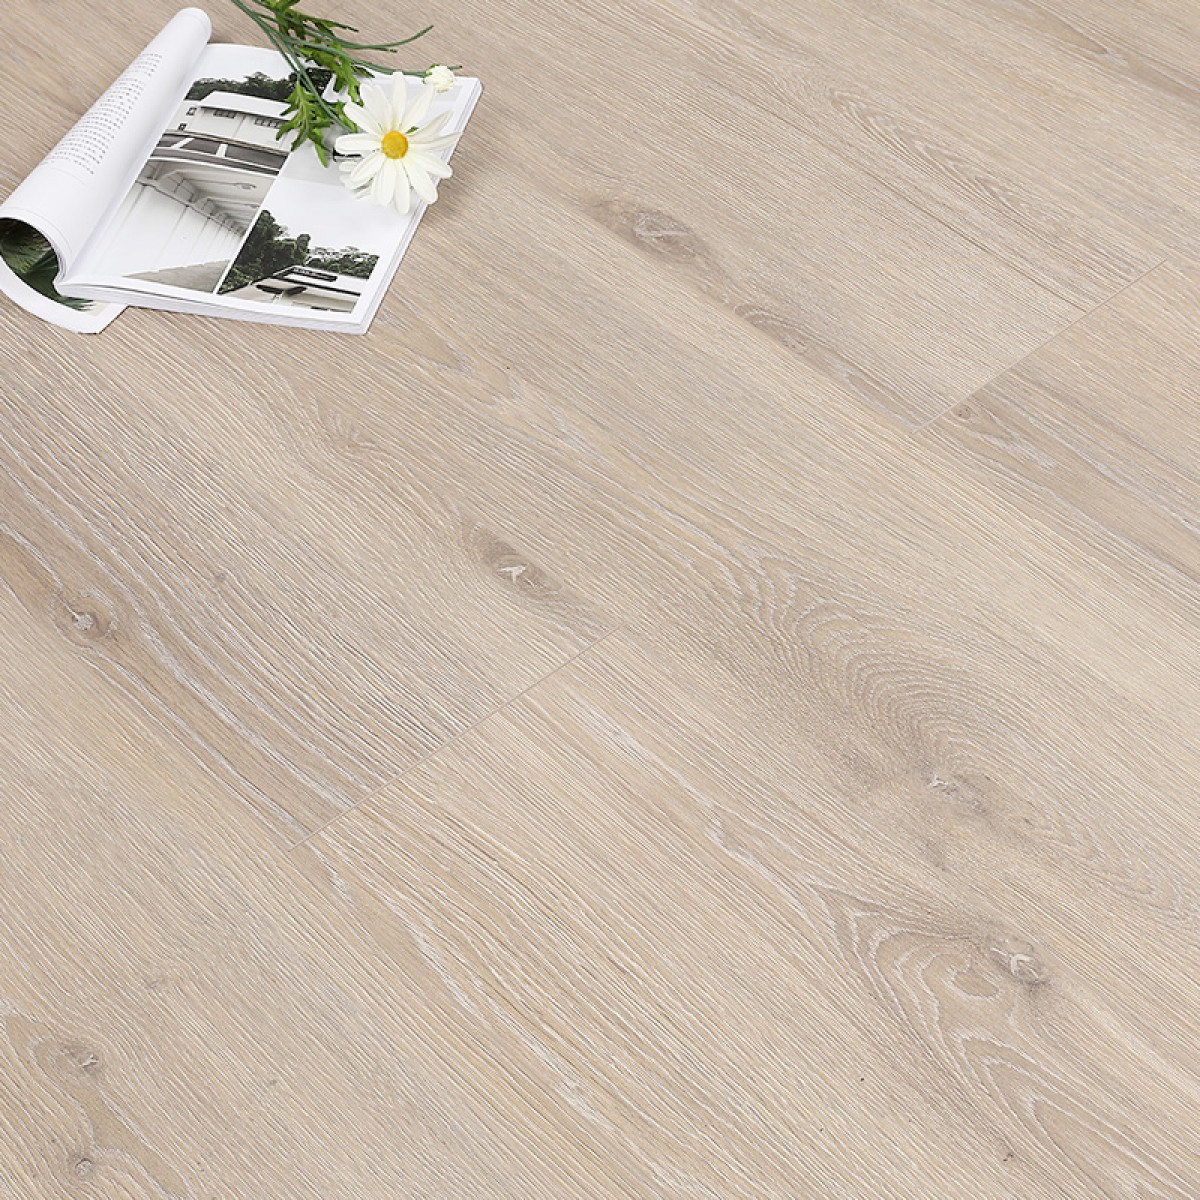 必美宝地雅复合地板比利时原装进口时尚环保家用木地板342